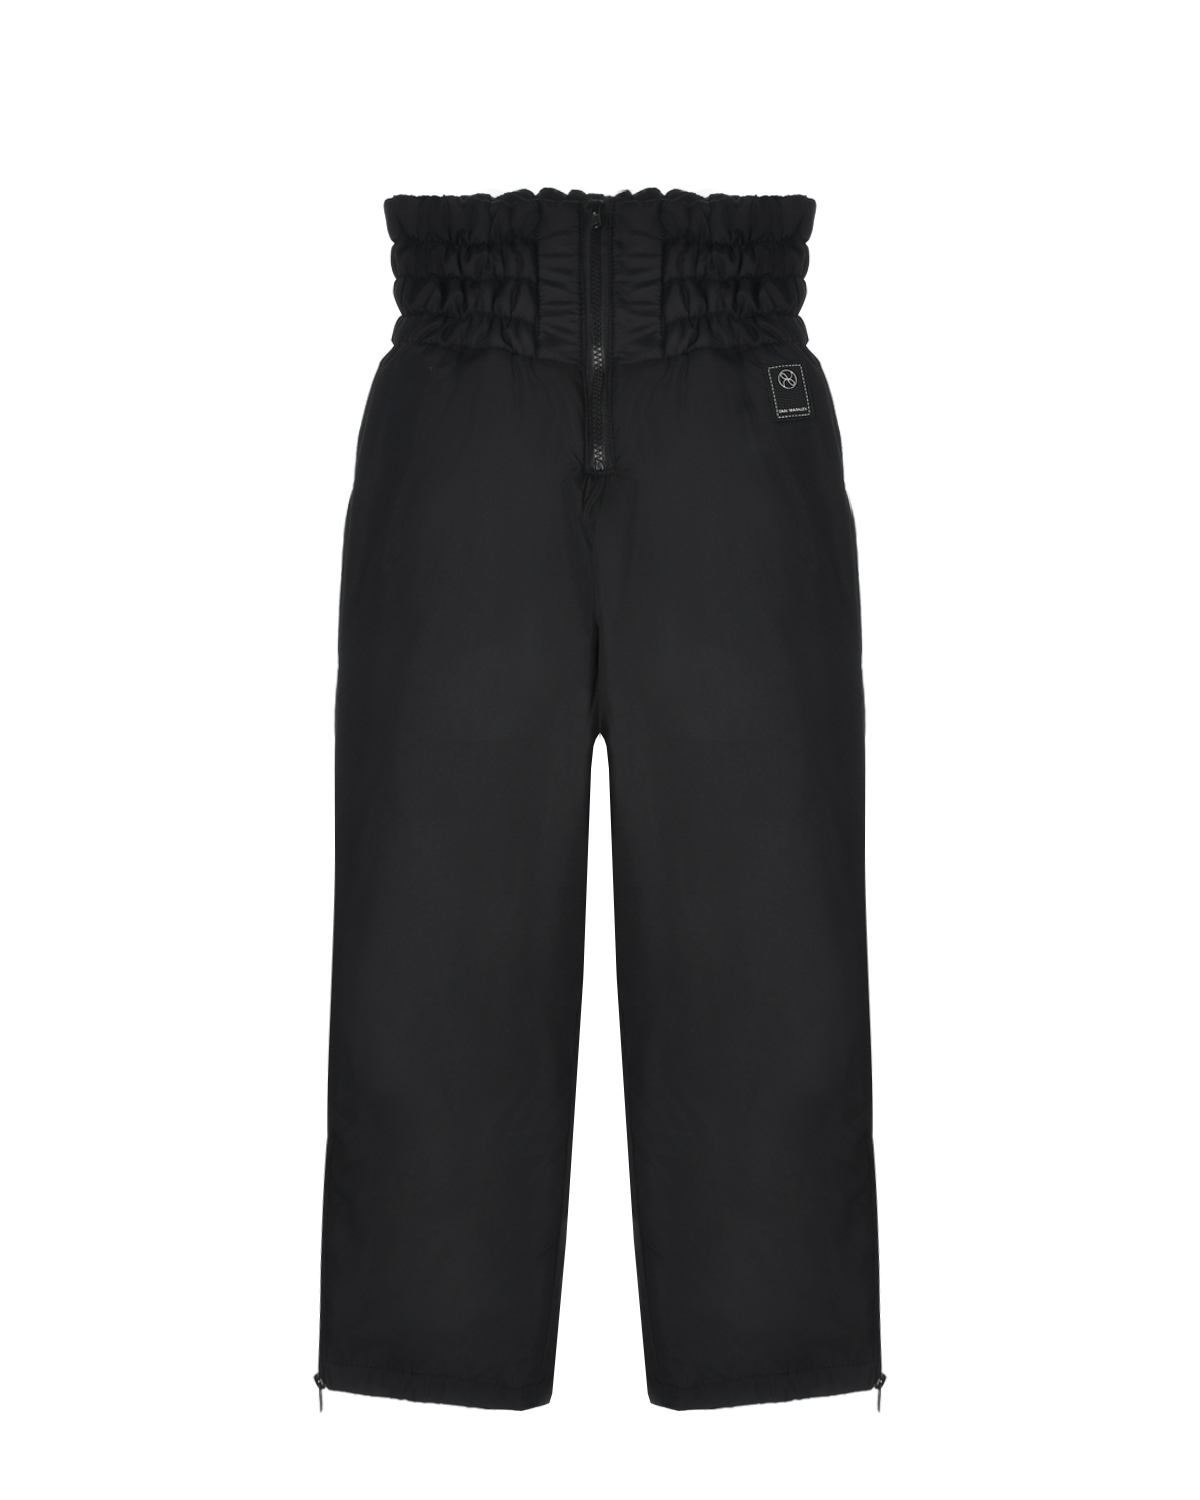 Утпеленные брюки с широким поясом Dan Maralex детские, размер 140, цвет черный